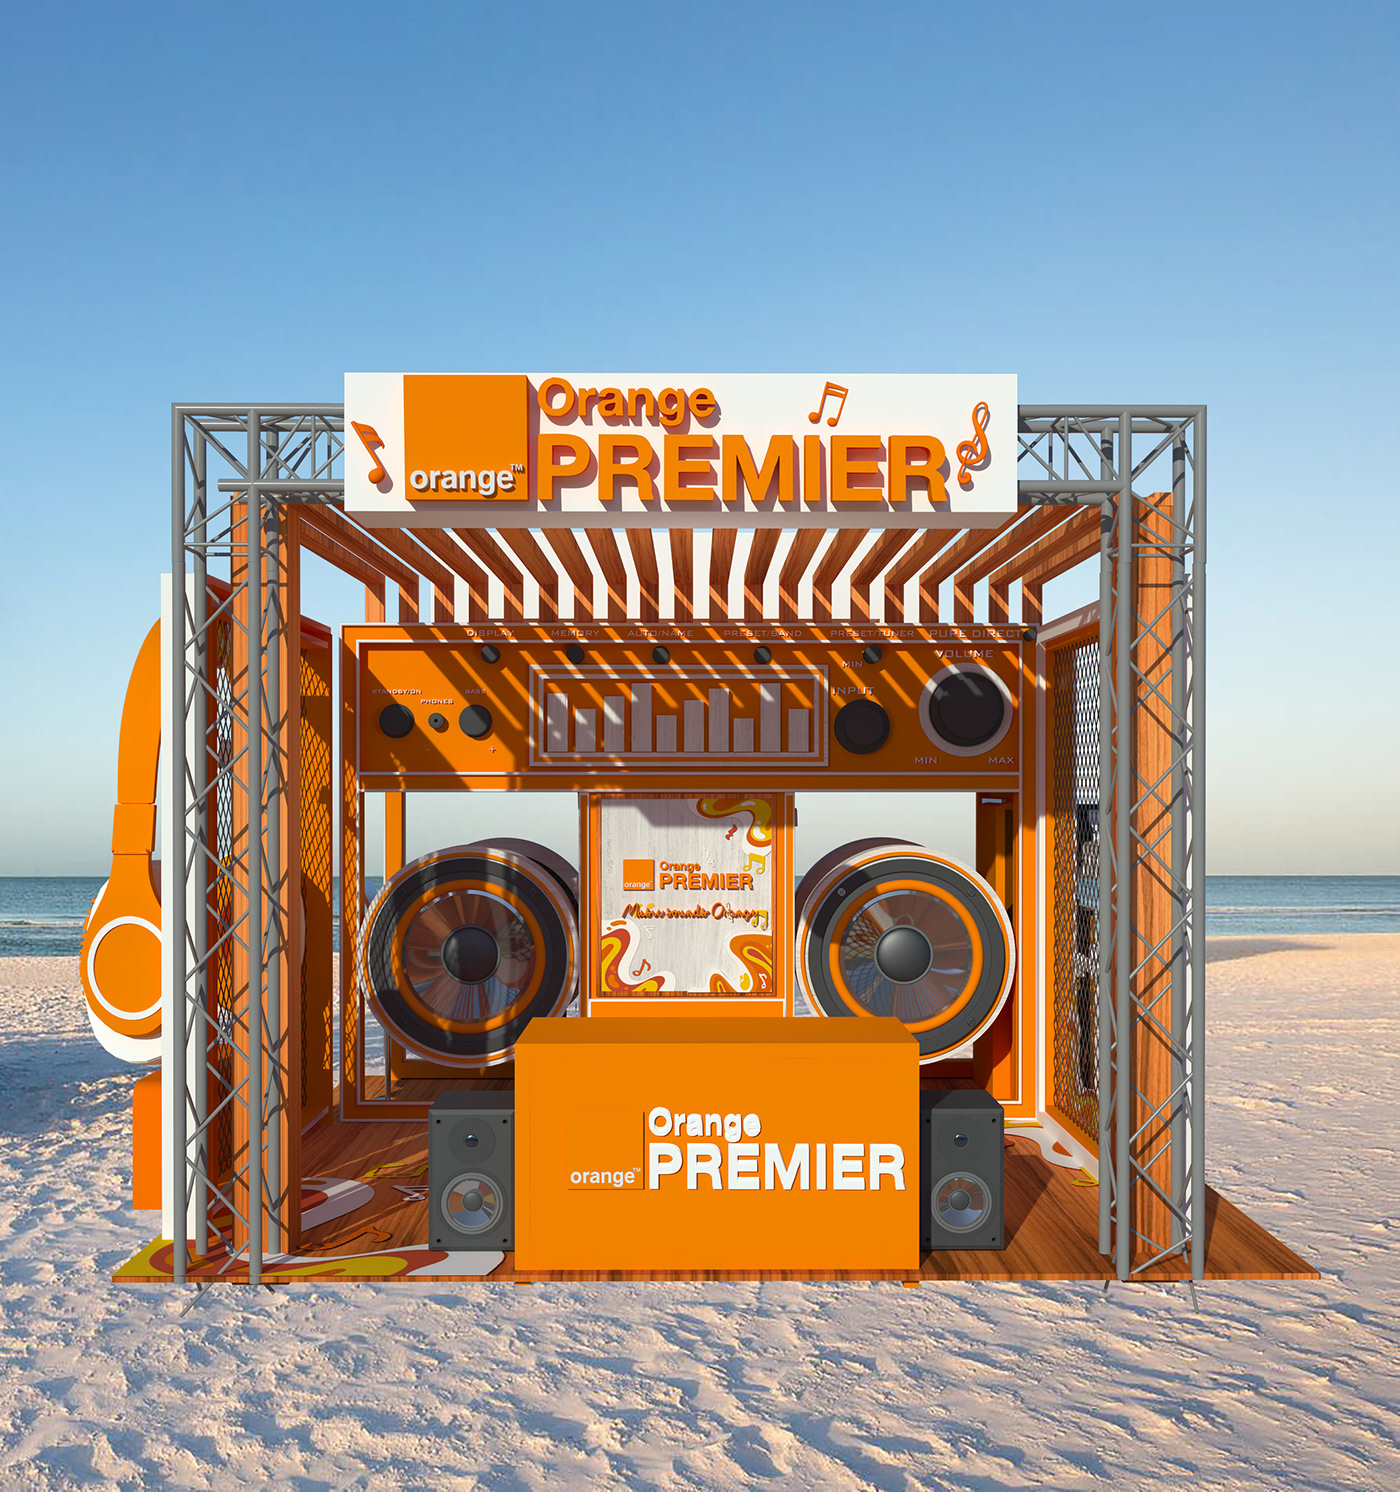 3ds max booth design headphones intertainment music orange orange primer for sea summer